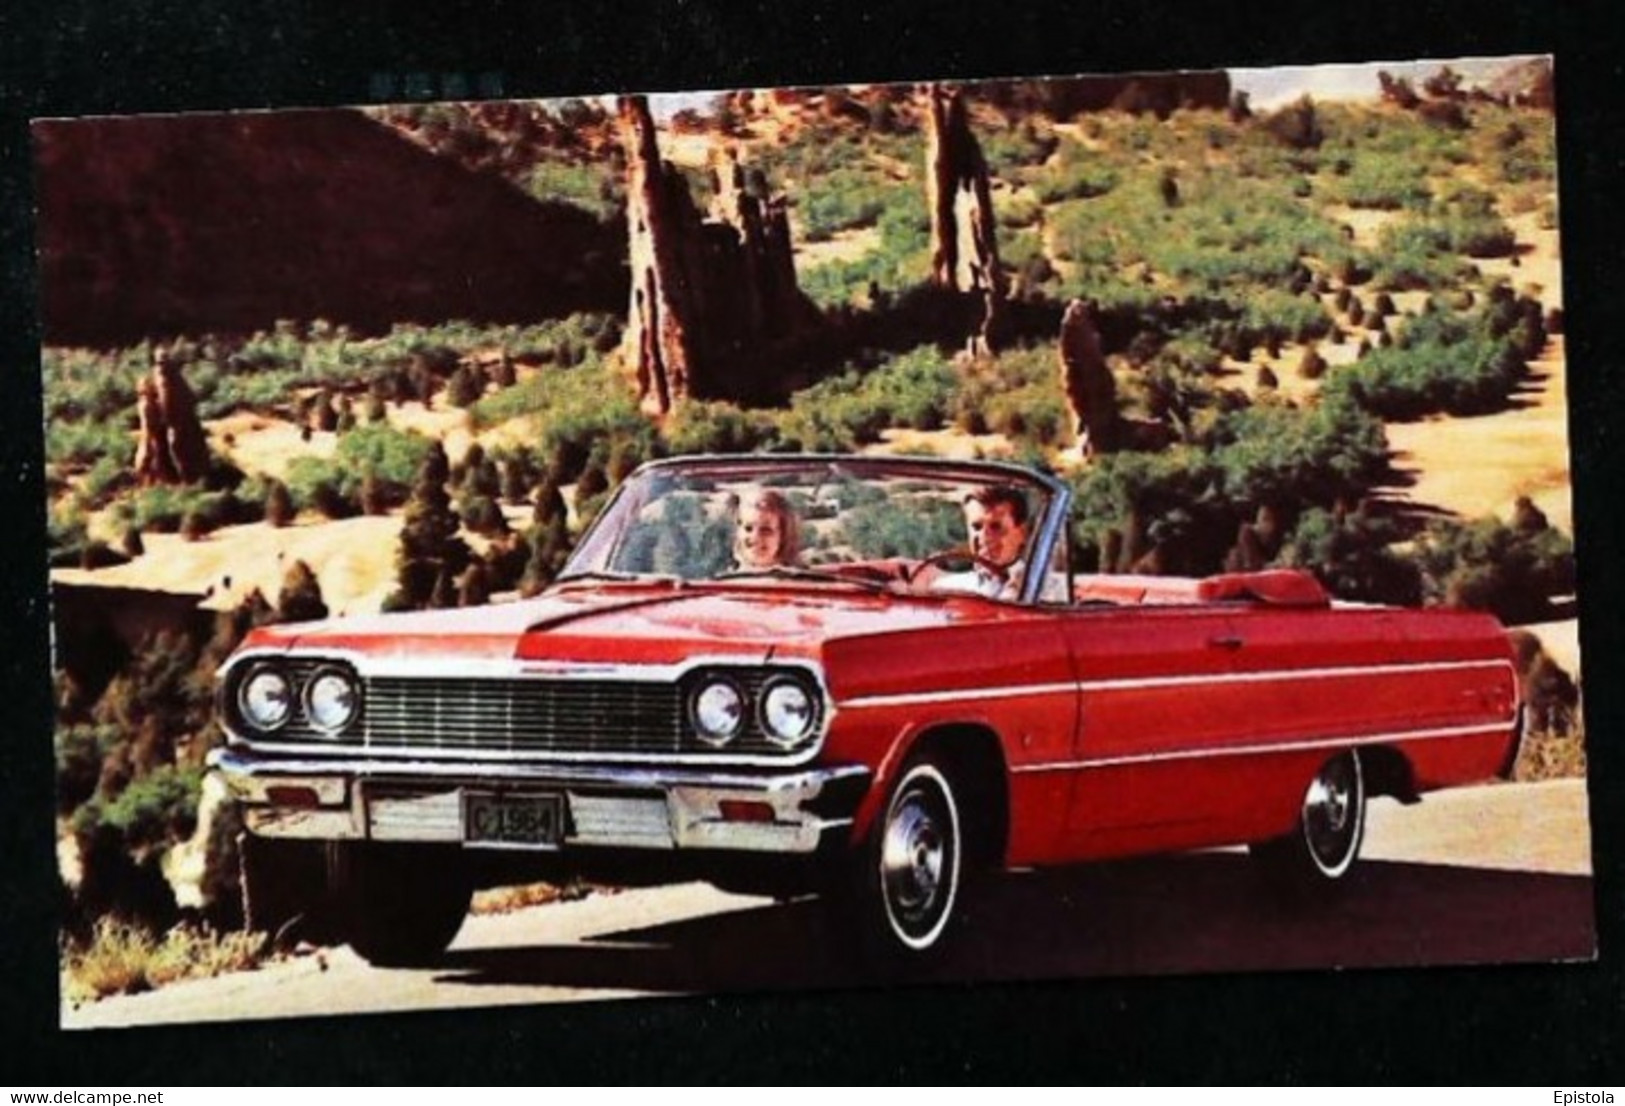 ► CHEVROLET Impala Convertible 1964  - Publicité Automobile Chevrolet   (Litho. U.S.A.) - American Roadside